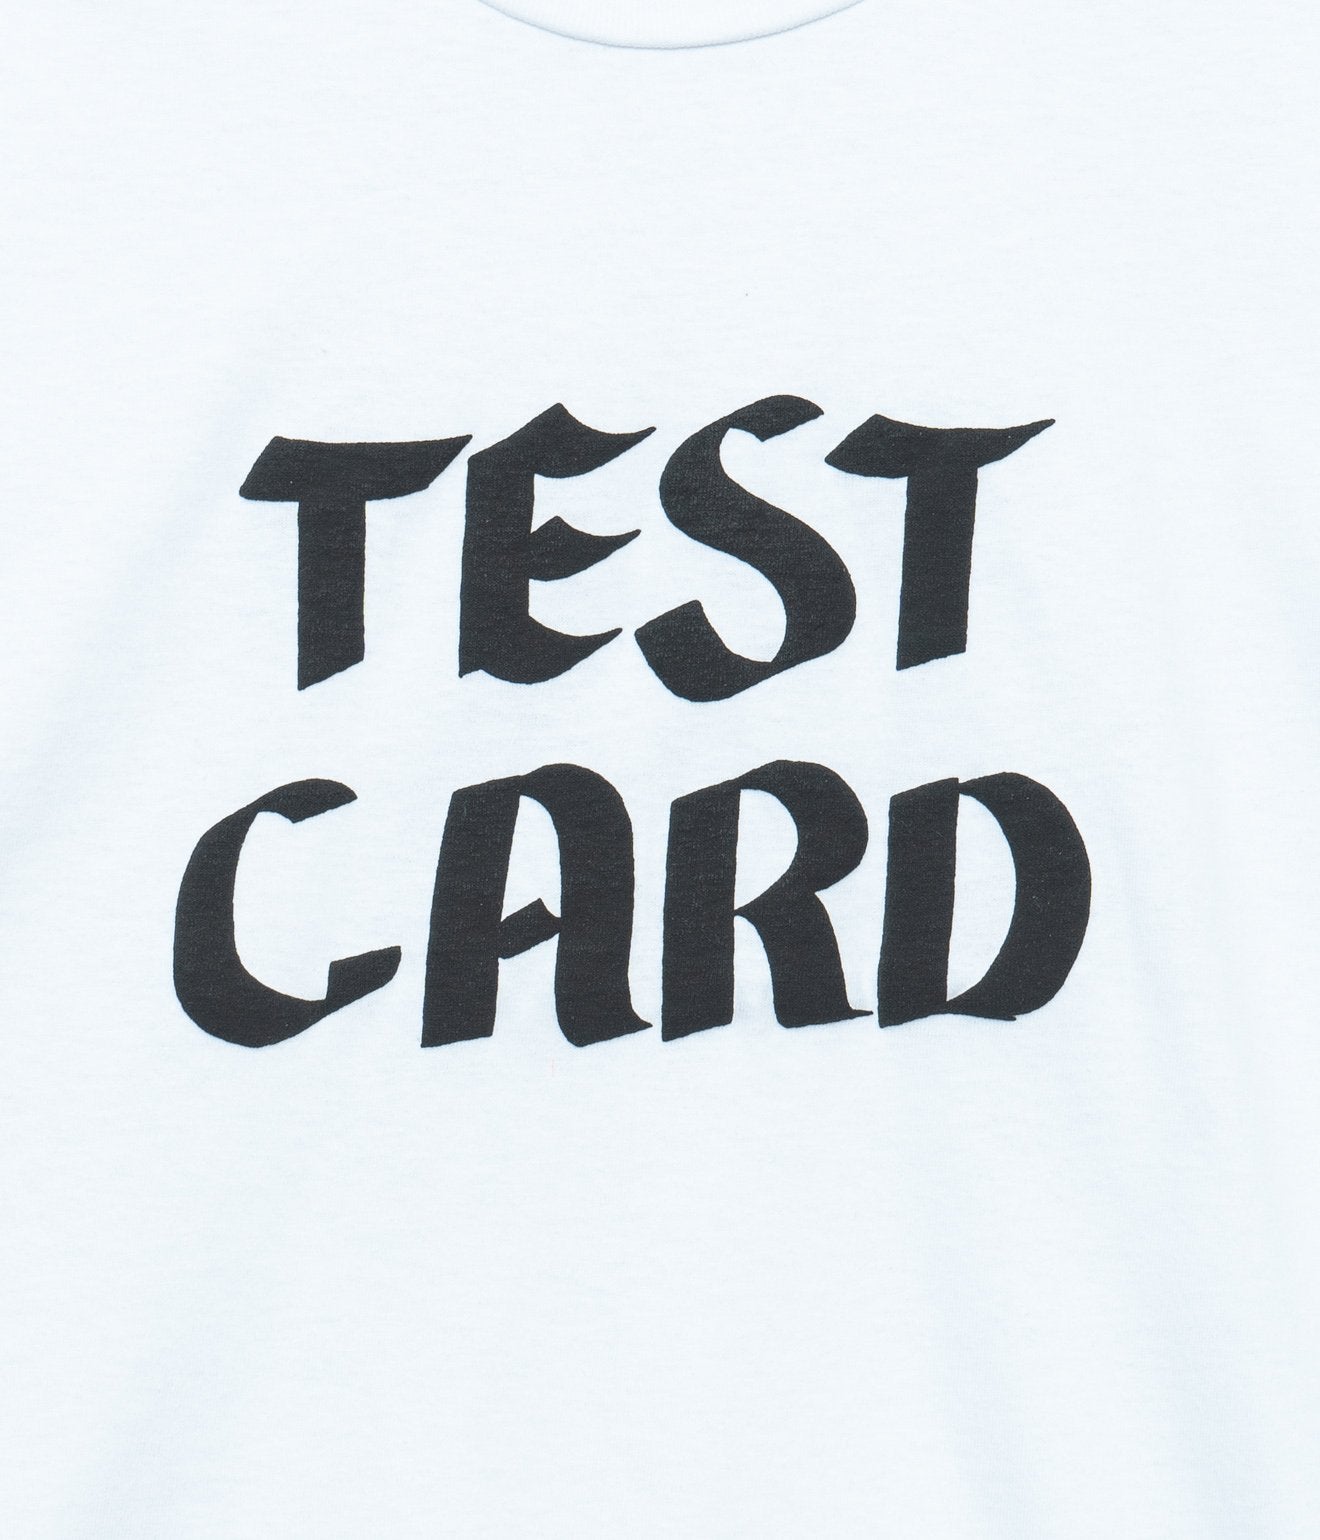 LOOSEJOINTS Tomoo Gokita / Test Card TEE WHITE - WEAREALLANIMALS